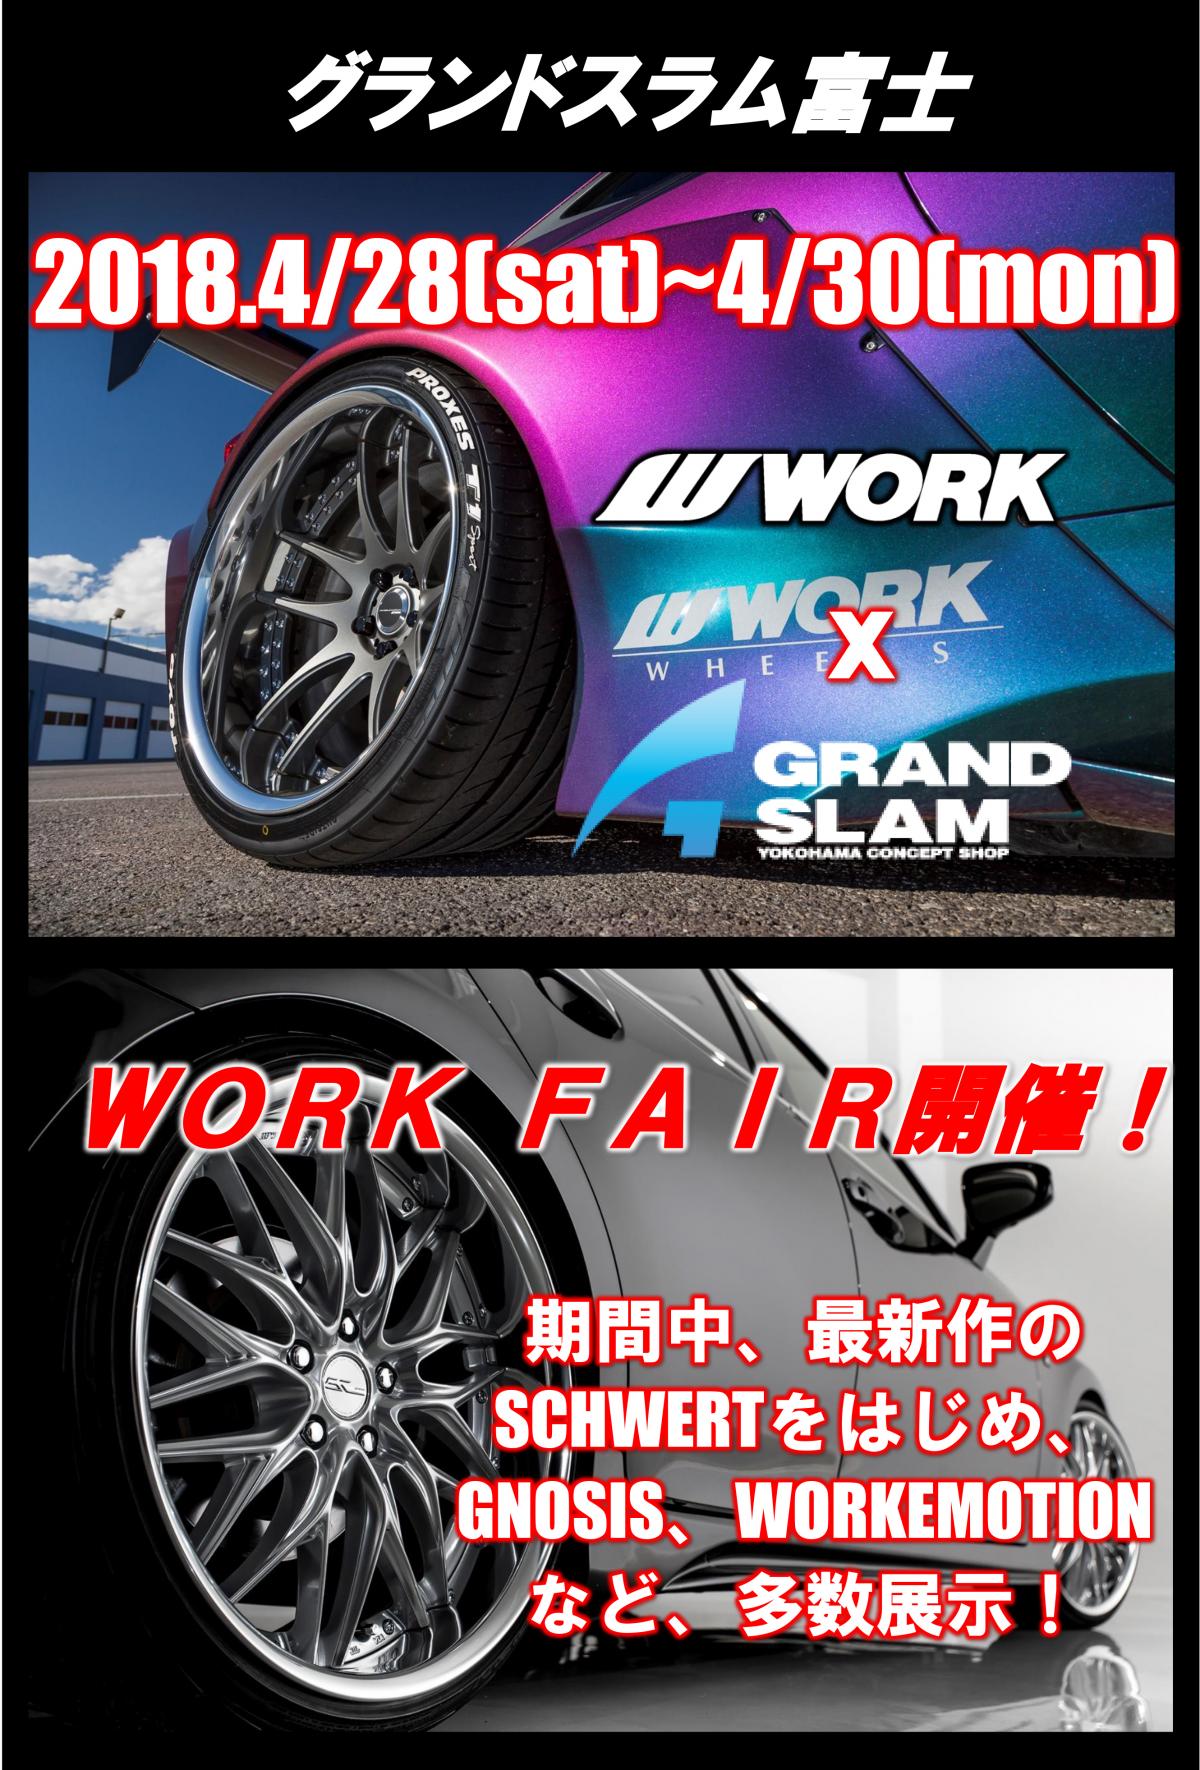 Grand Slam Fuji WORK FAIR